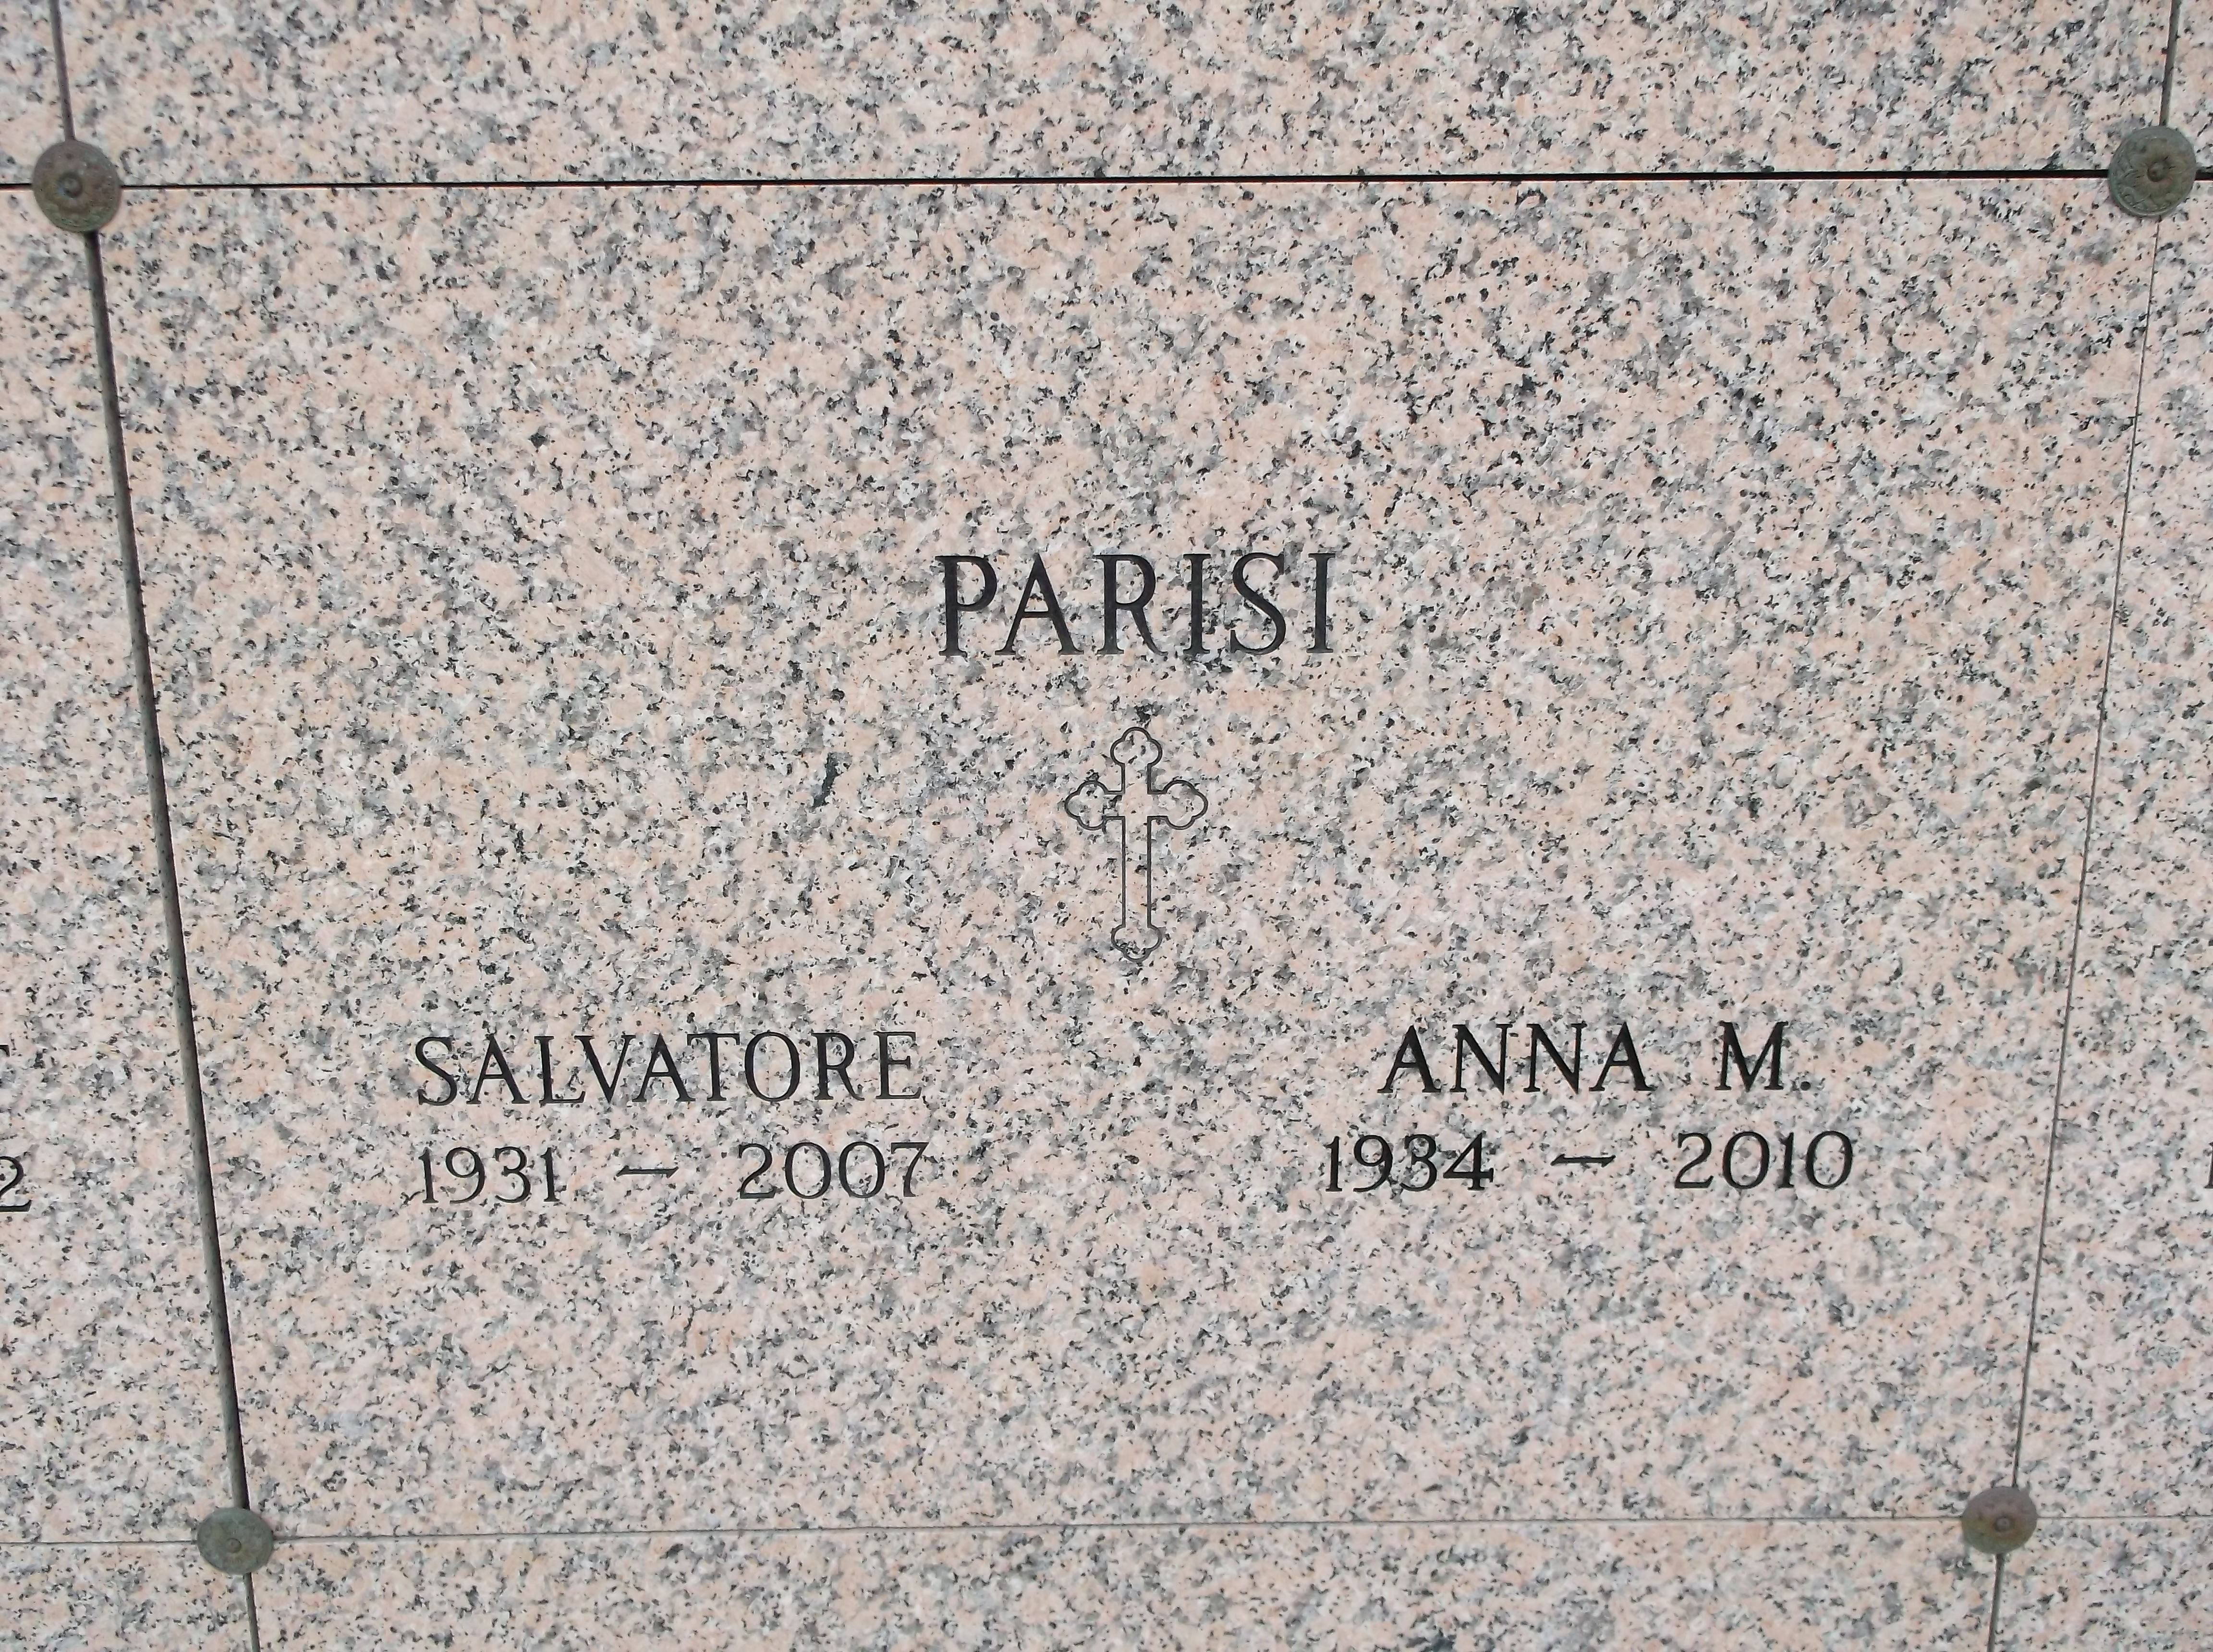 Anna M Parisi